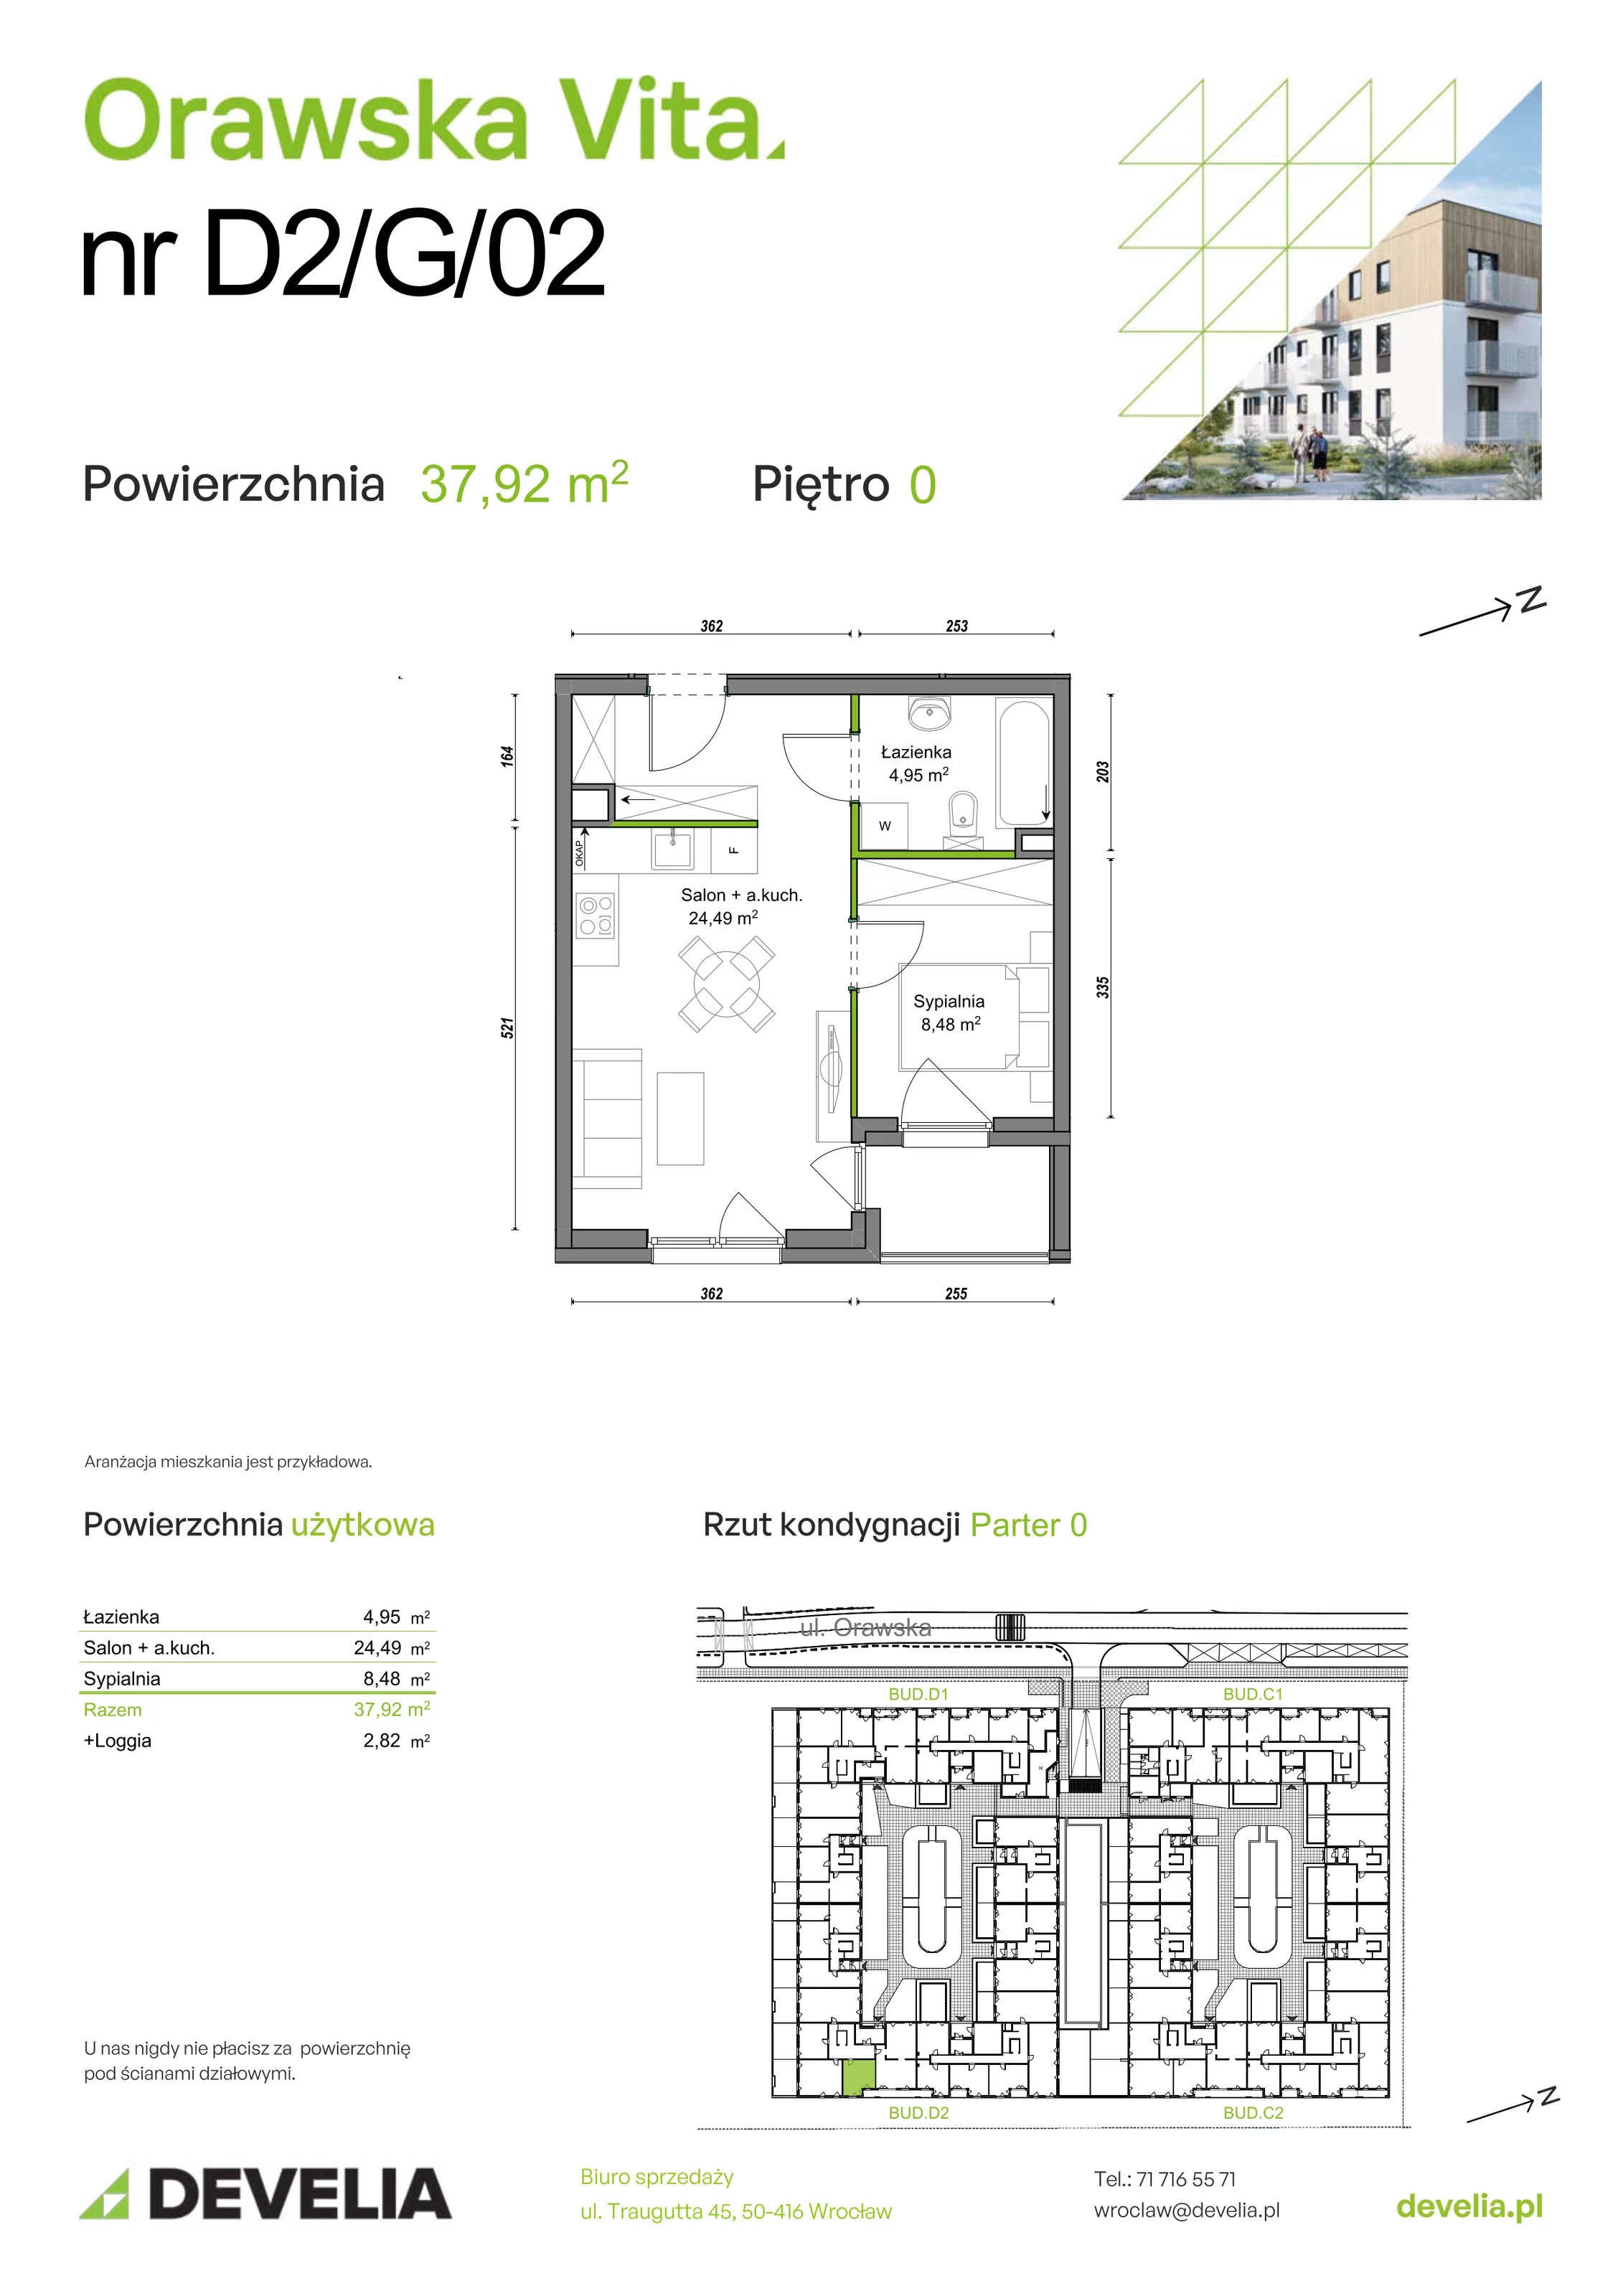 Mieszkanie 37,92 m², parter, oferta nr D2/G/02, Orawska Vita, Wrocław, Ołtaszyn, Krzyki, ul. Orawska 73